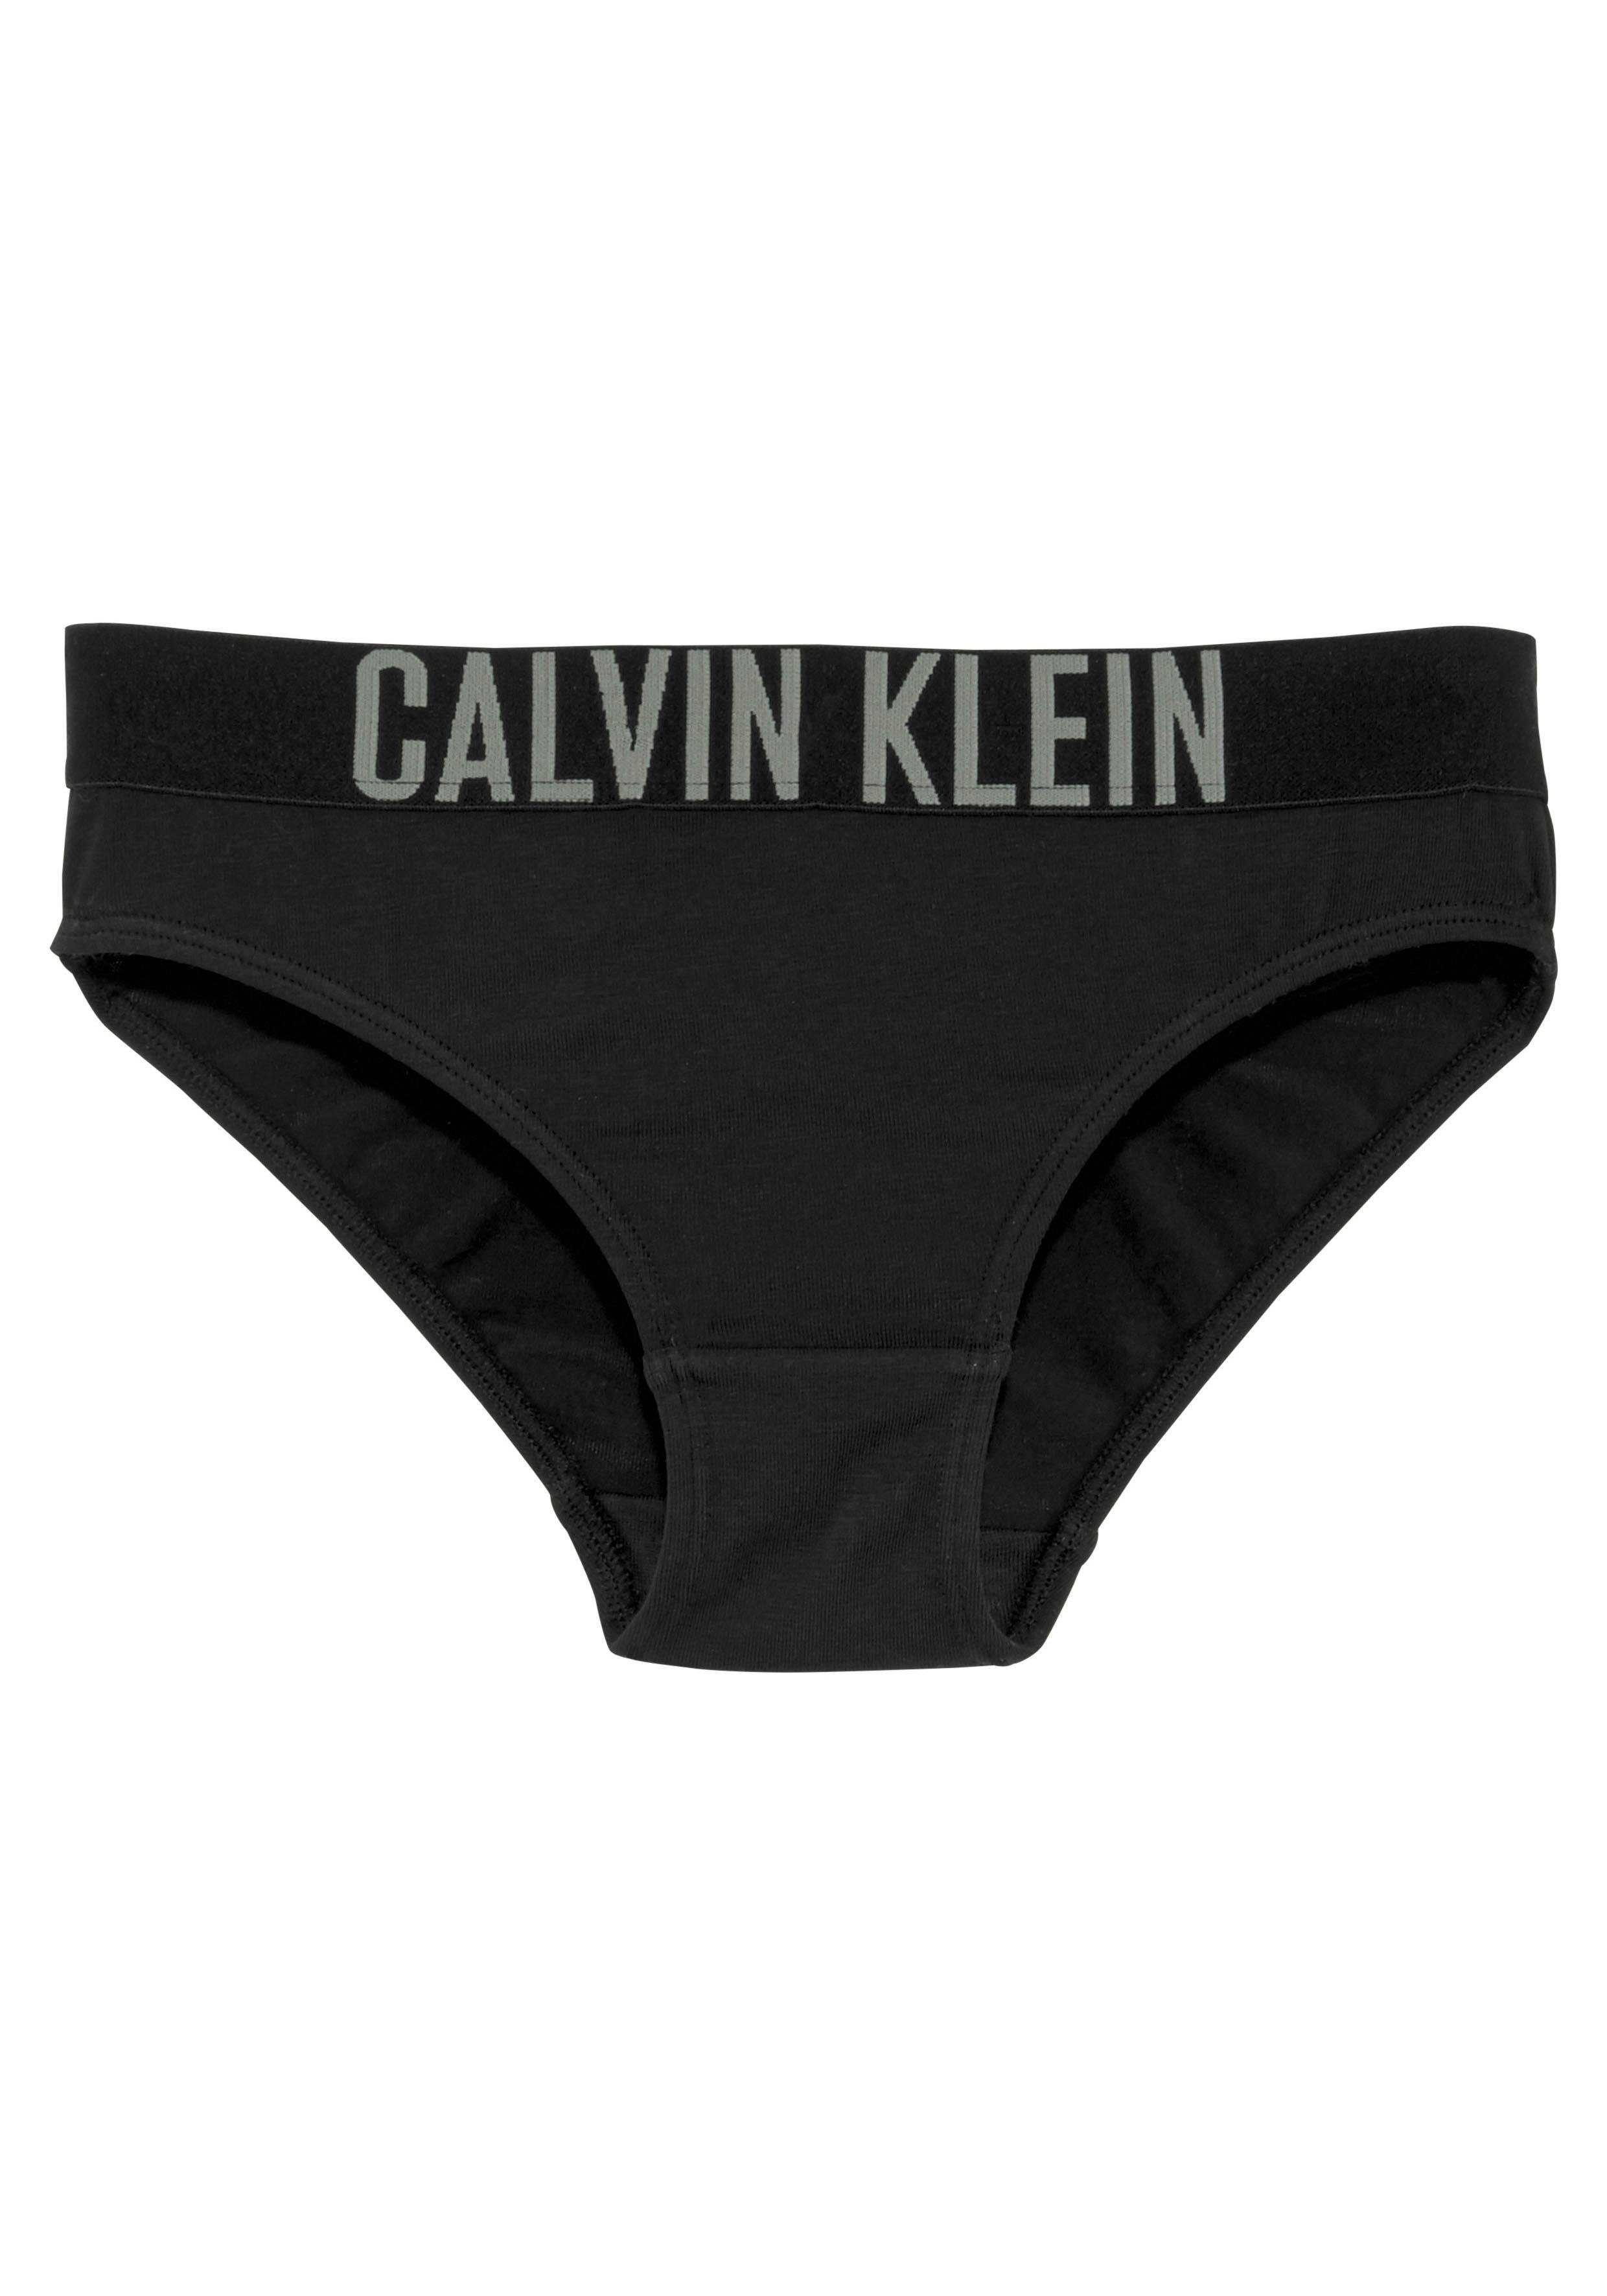 MiniMe,für Junior Power Klein Underwear Calvin Kinder (2-St) Bikinislip Mädchen Kids Intenese